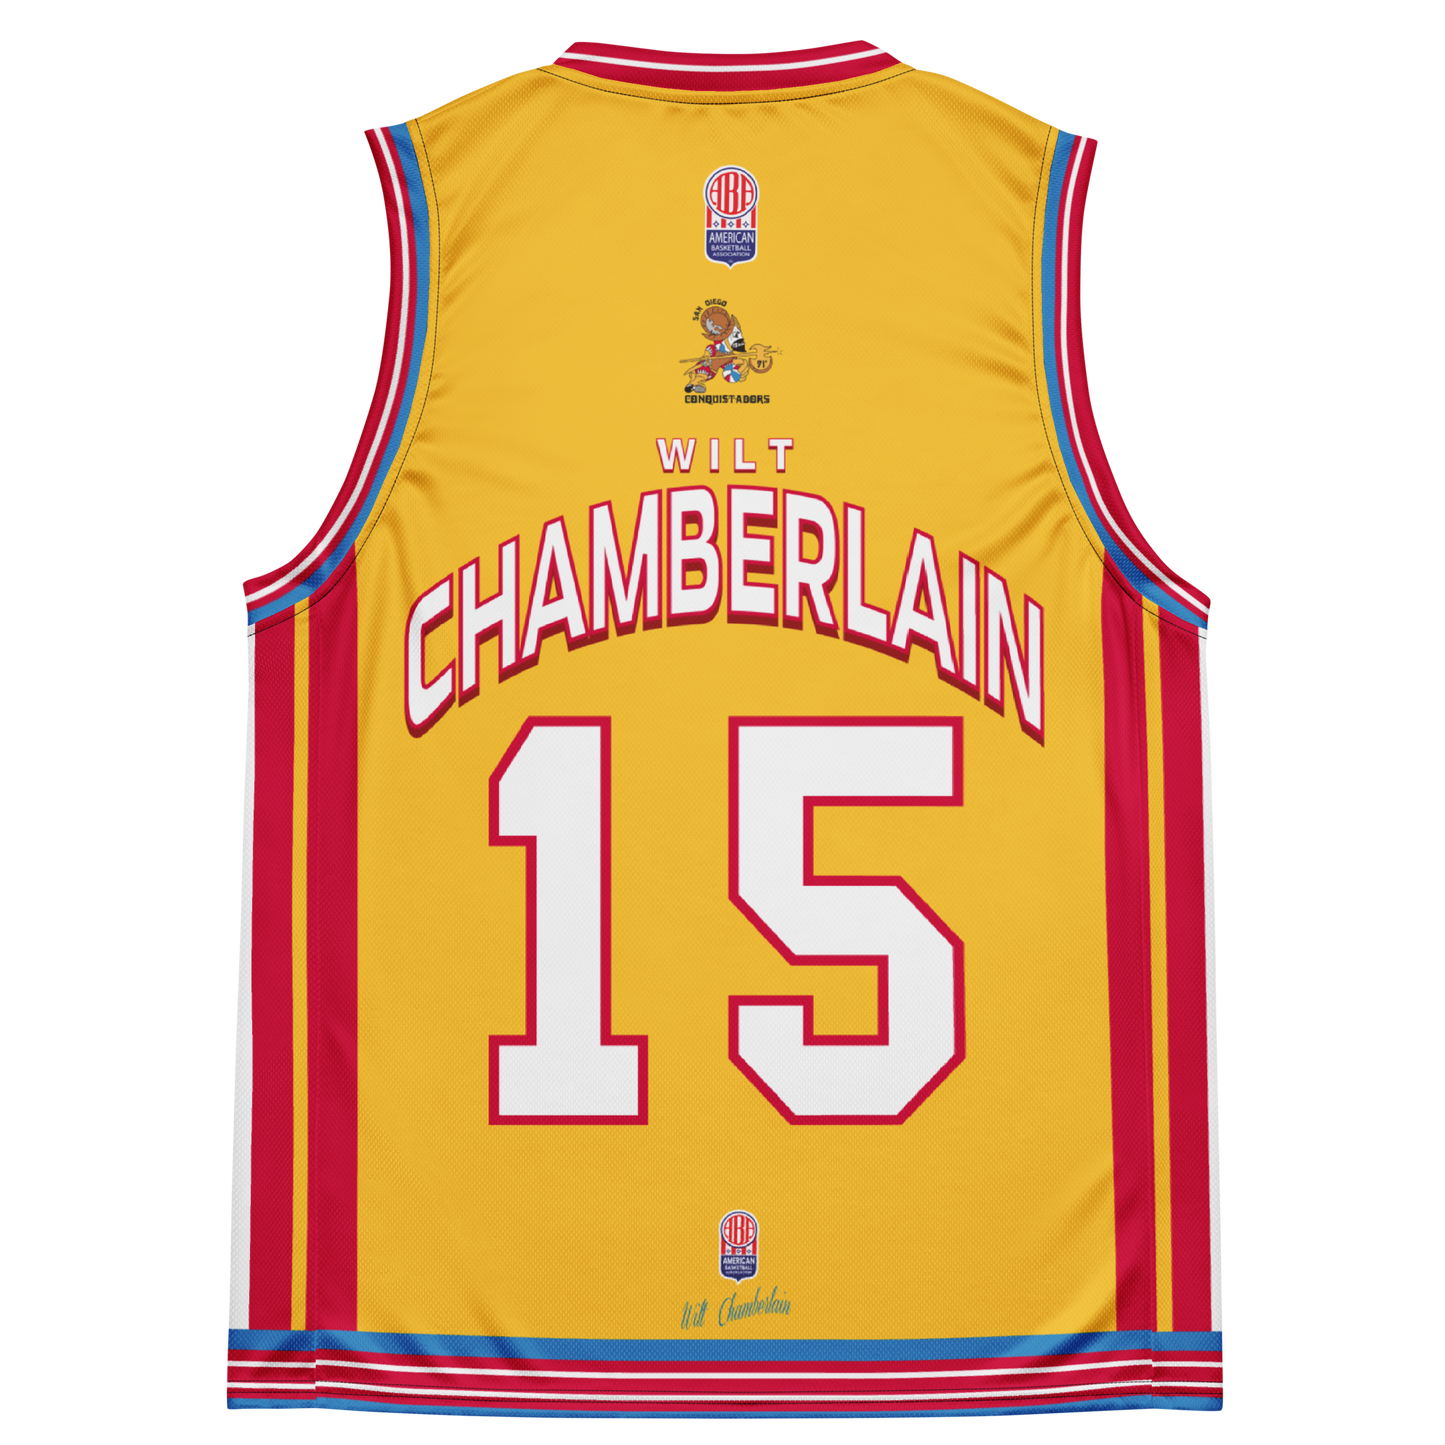 The legendary Wilt Chamberlain #15 San Diego Conquistadors jersey